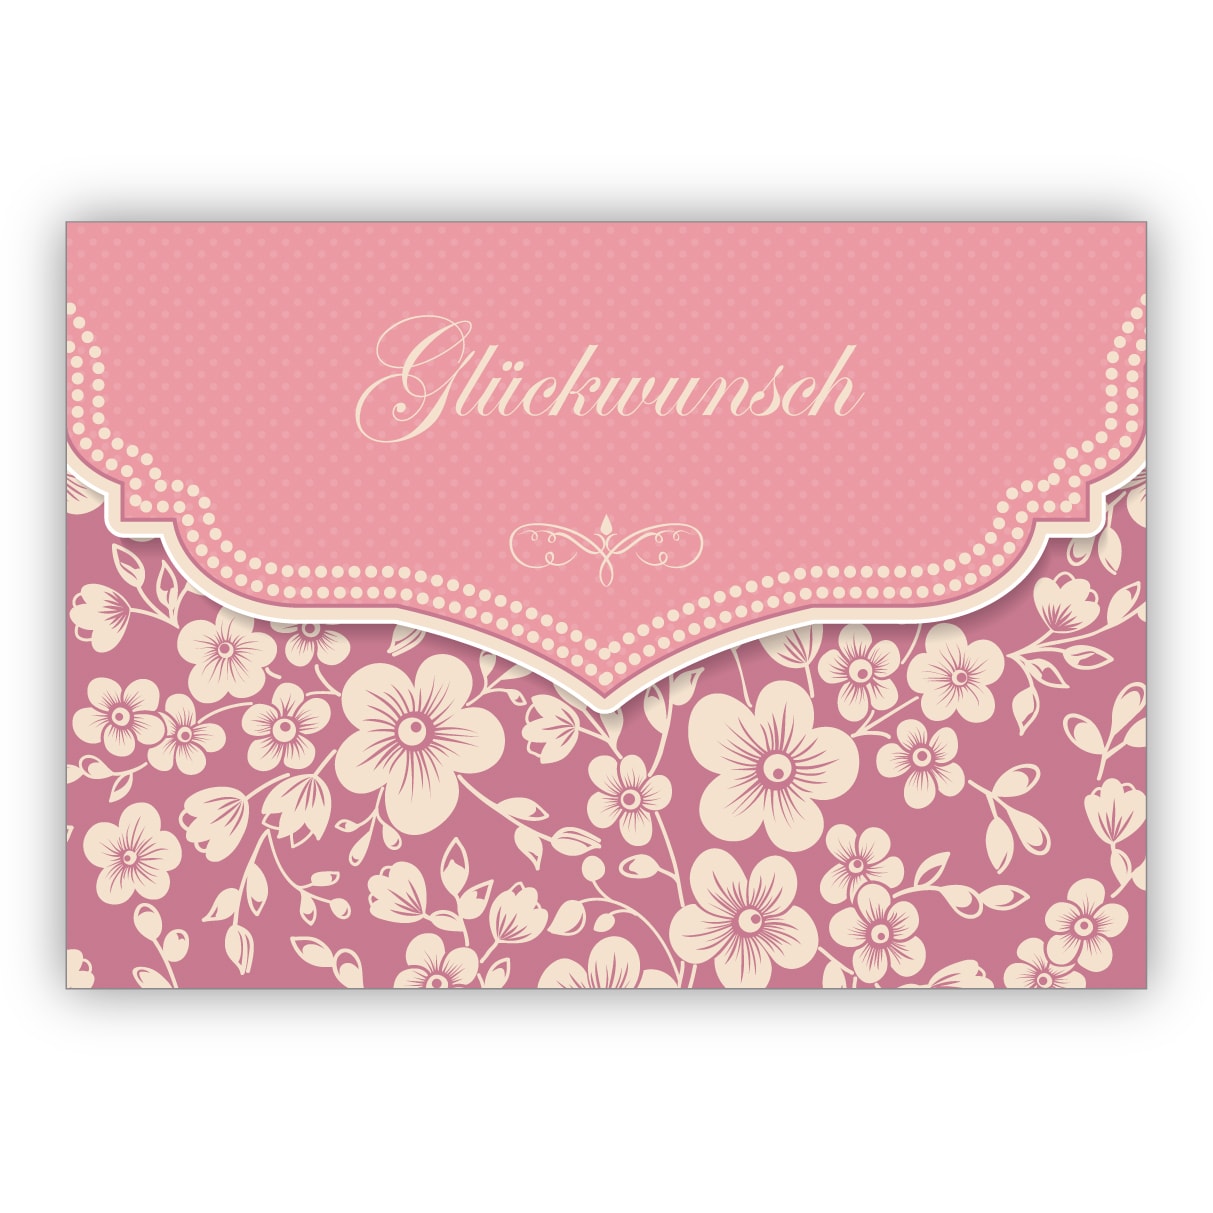 Wunderbare Vintage Glückwunschkarte mit Retro Kirschblüten Muster in rosa zur Hochzeit, Taufe, Geburt, Examen etc: Glückwunsch